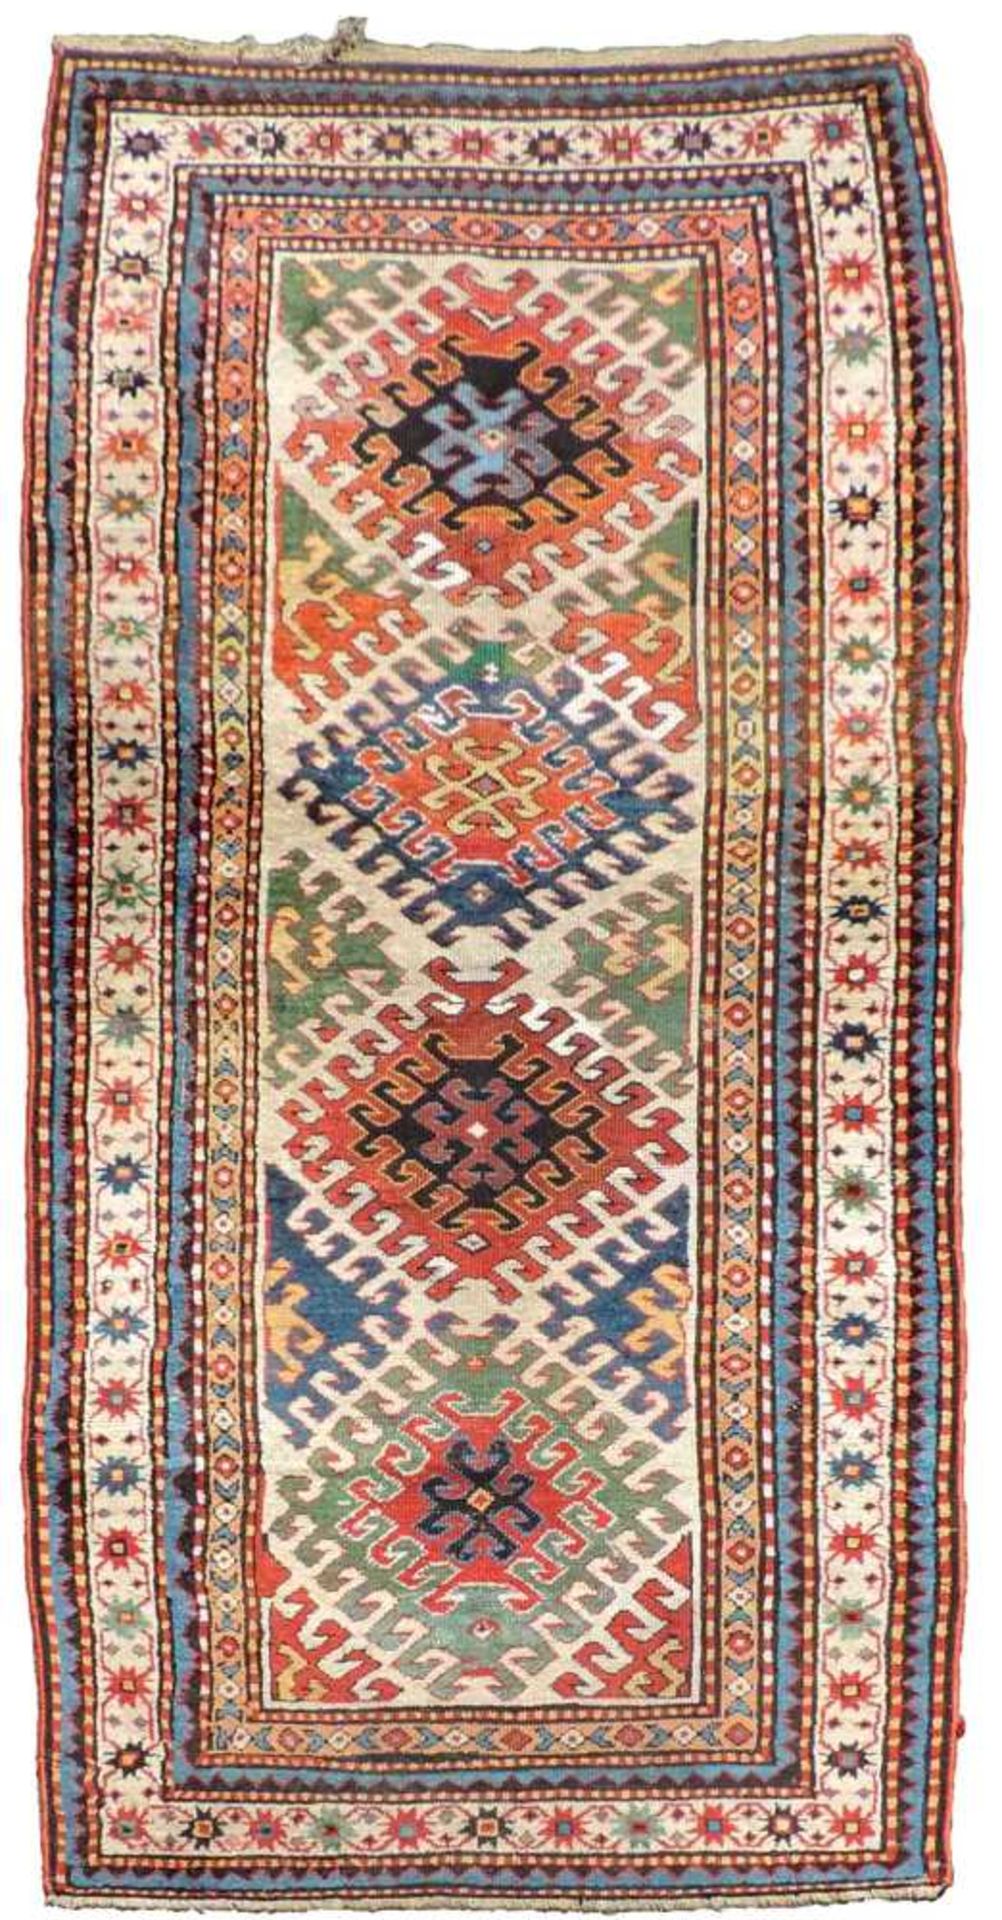 Bordjalou Kasak, Karabagh, Kaukasus. Antik, um 1870. 242 cm x 110 cm. Dorfteppich. Handgeknüpft.